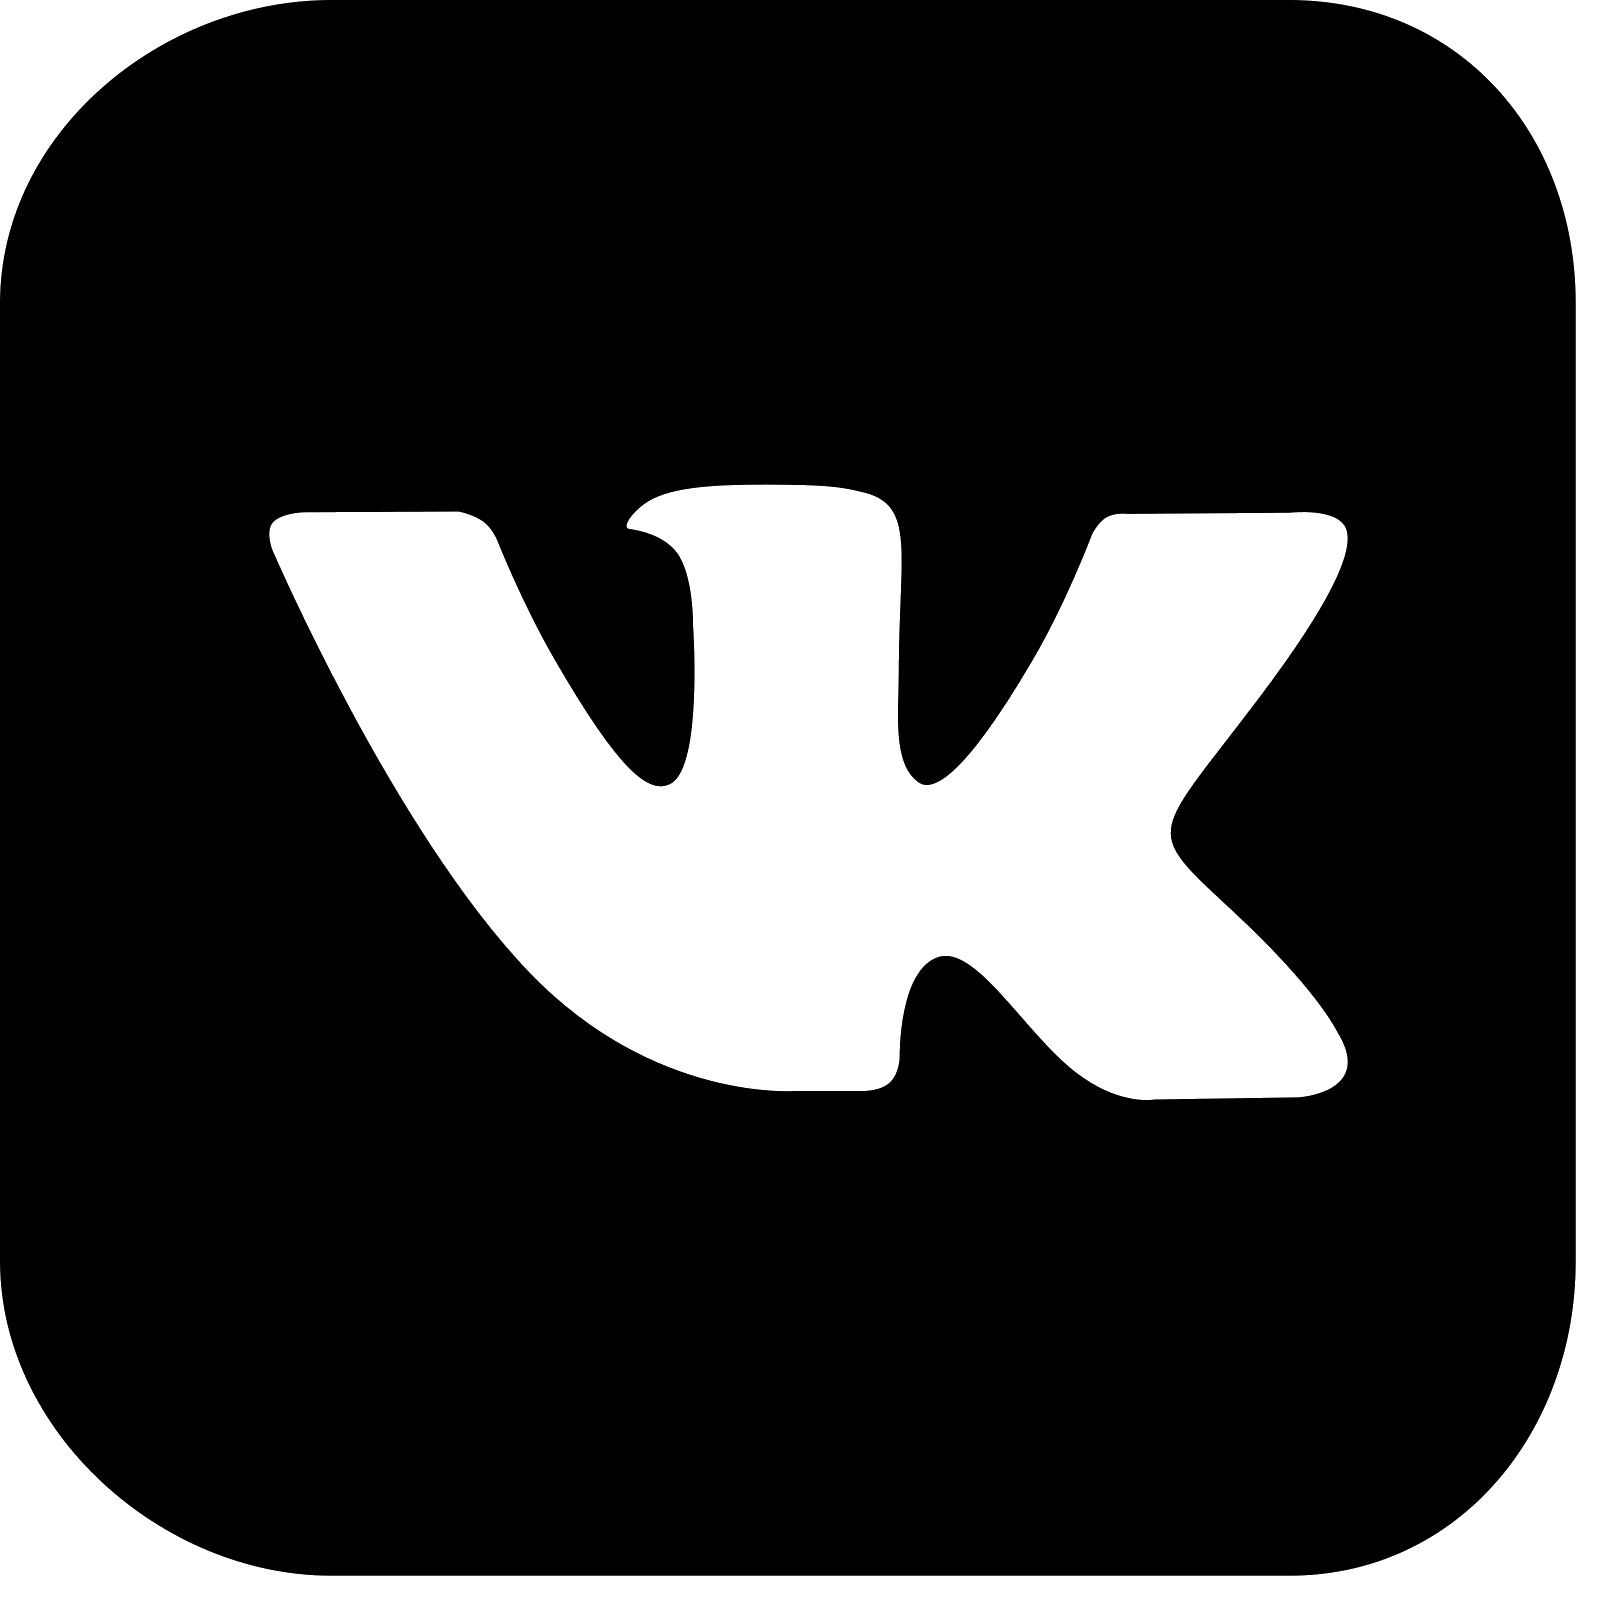 Логотип ВК. Маленький значок ВК. Логотип ВК черный. Логотип ВК без фона. 19499320 вк